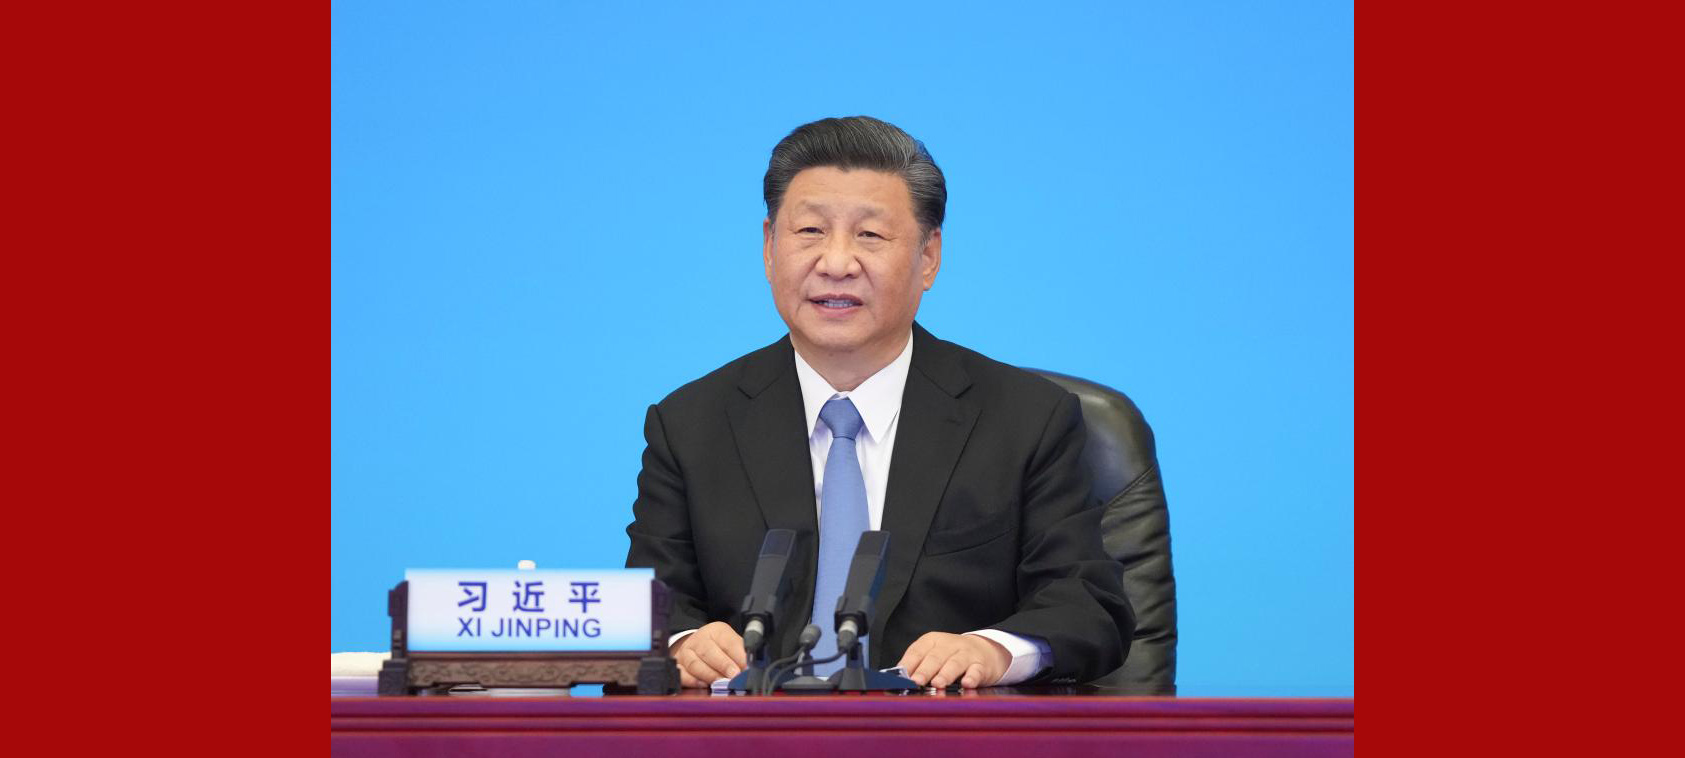 Enfoque: Xi pede que partidos políticos no mundo assumam responsabilidade pela busca do bem-estar das pessoas e progresso da humanidade